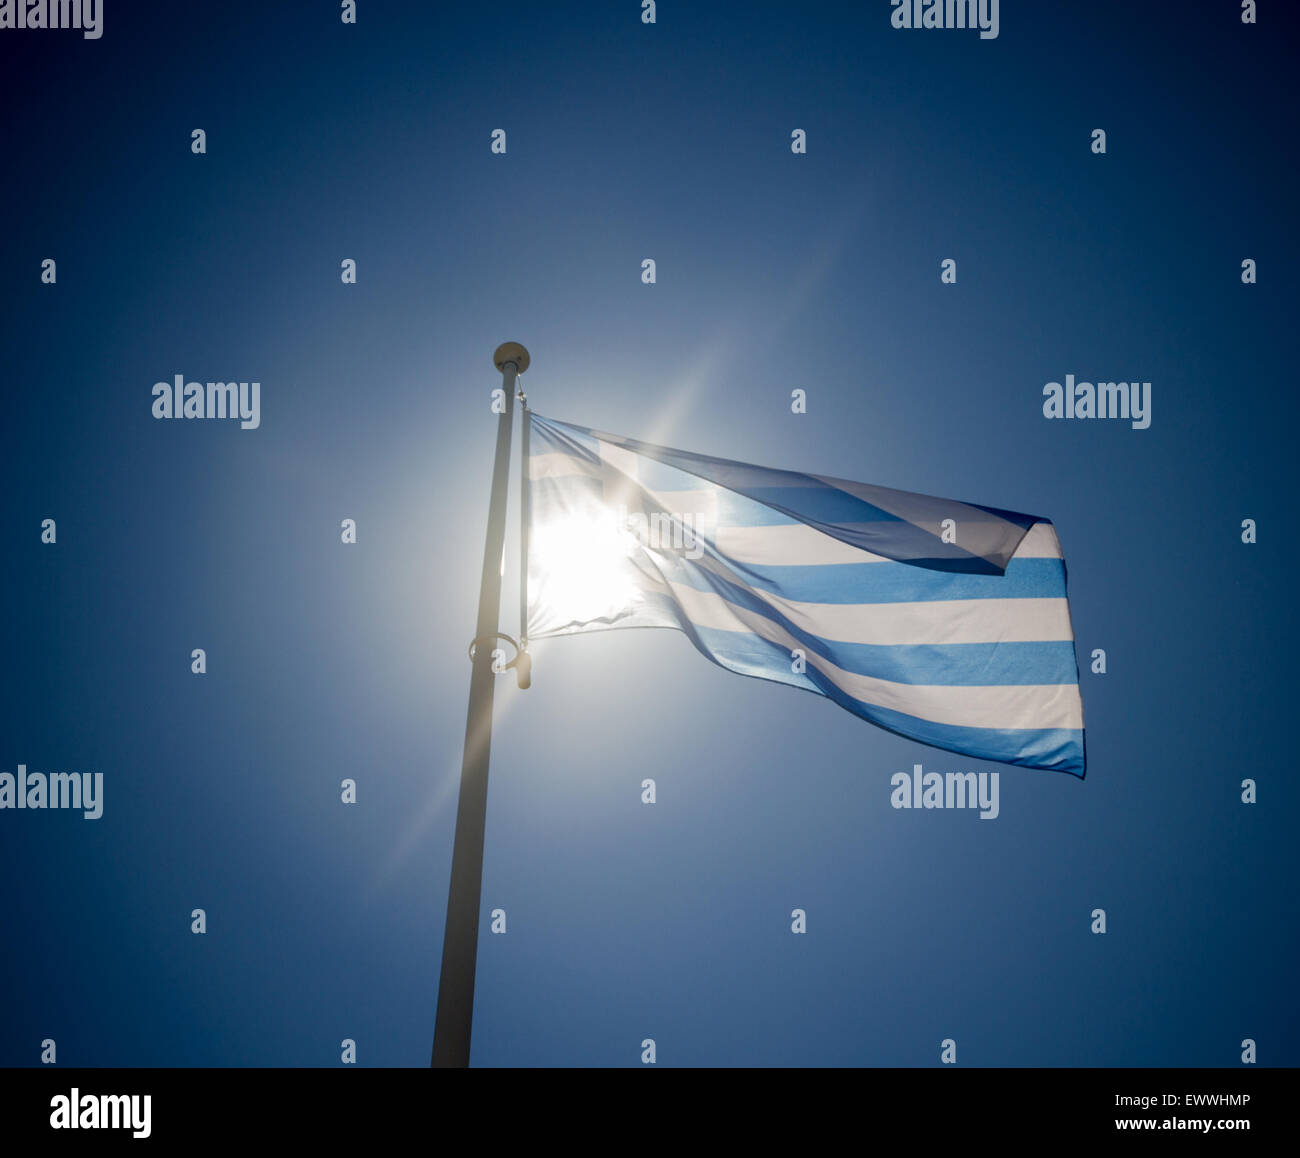 Bandiera Greca sventolando prima di sun sul cielo blu, contre-jour retroilluminazione Foto Stock